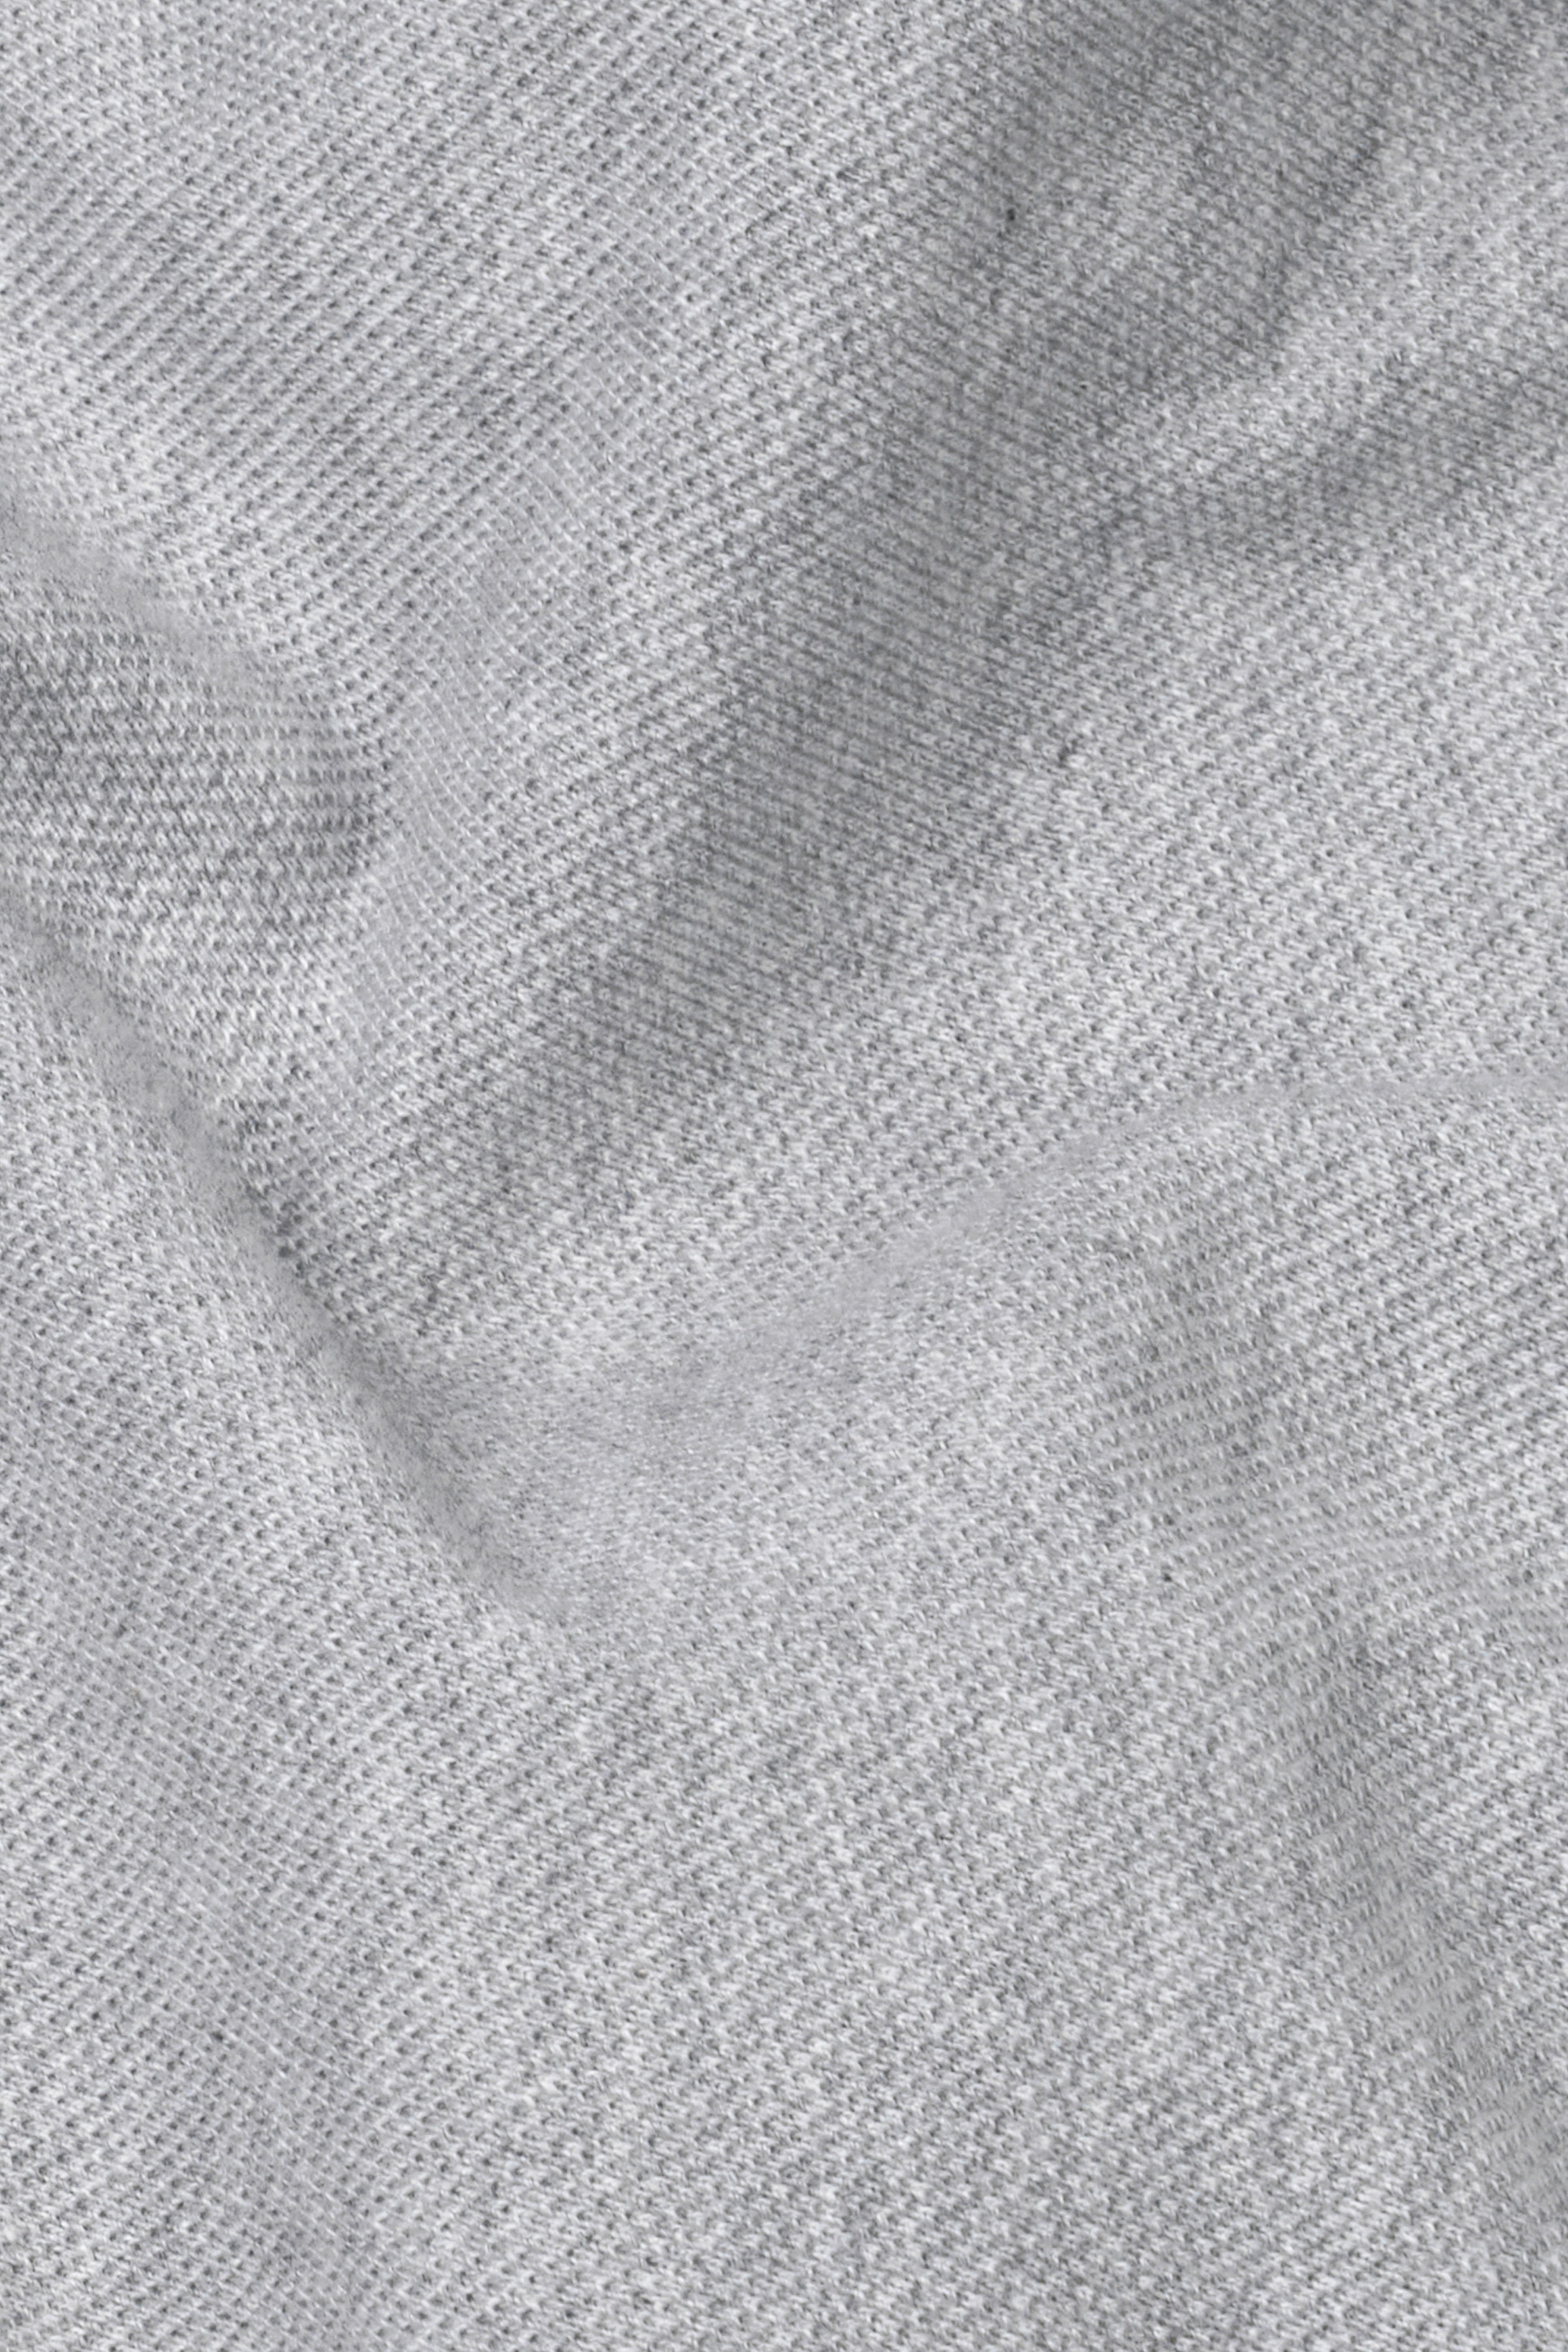 Nobel Gray Premium Cotton Pique Polo TS948-S, TS948-M, TS948-L, TS948-XL, TS948-XXL